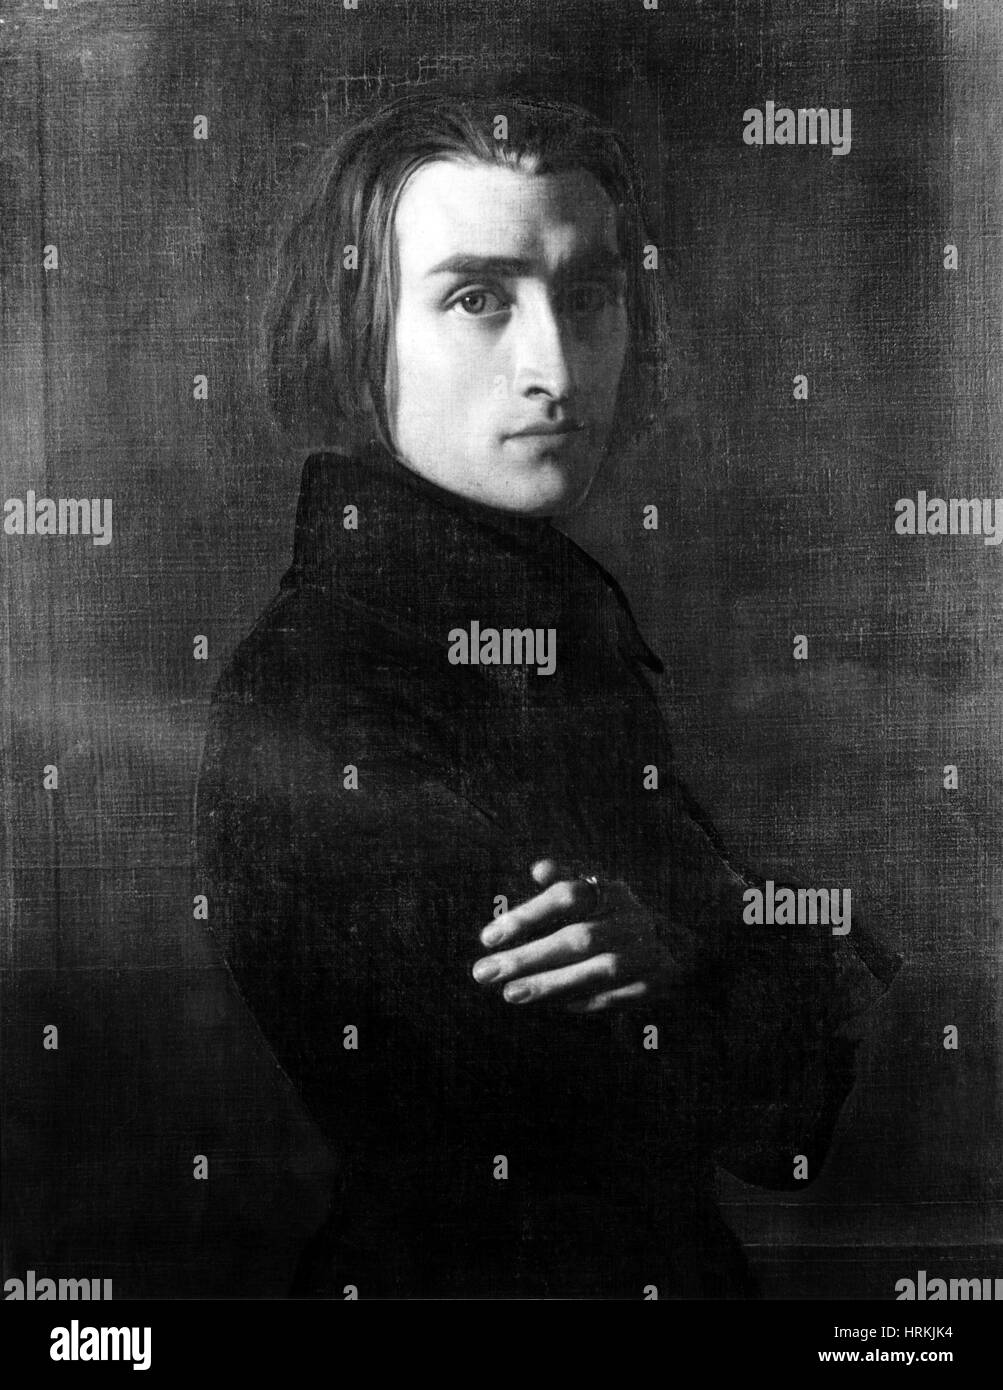 Franz Liszt, compositeur et pianiste hongrois Banque D'Images